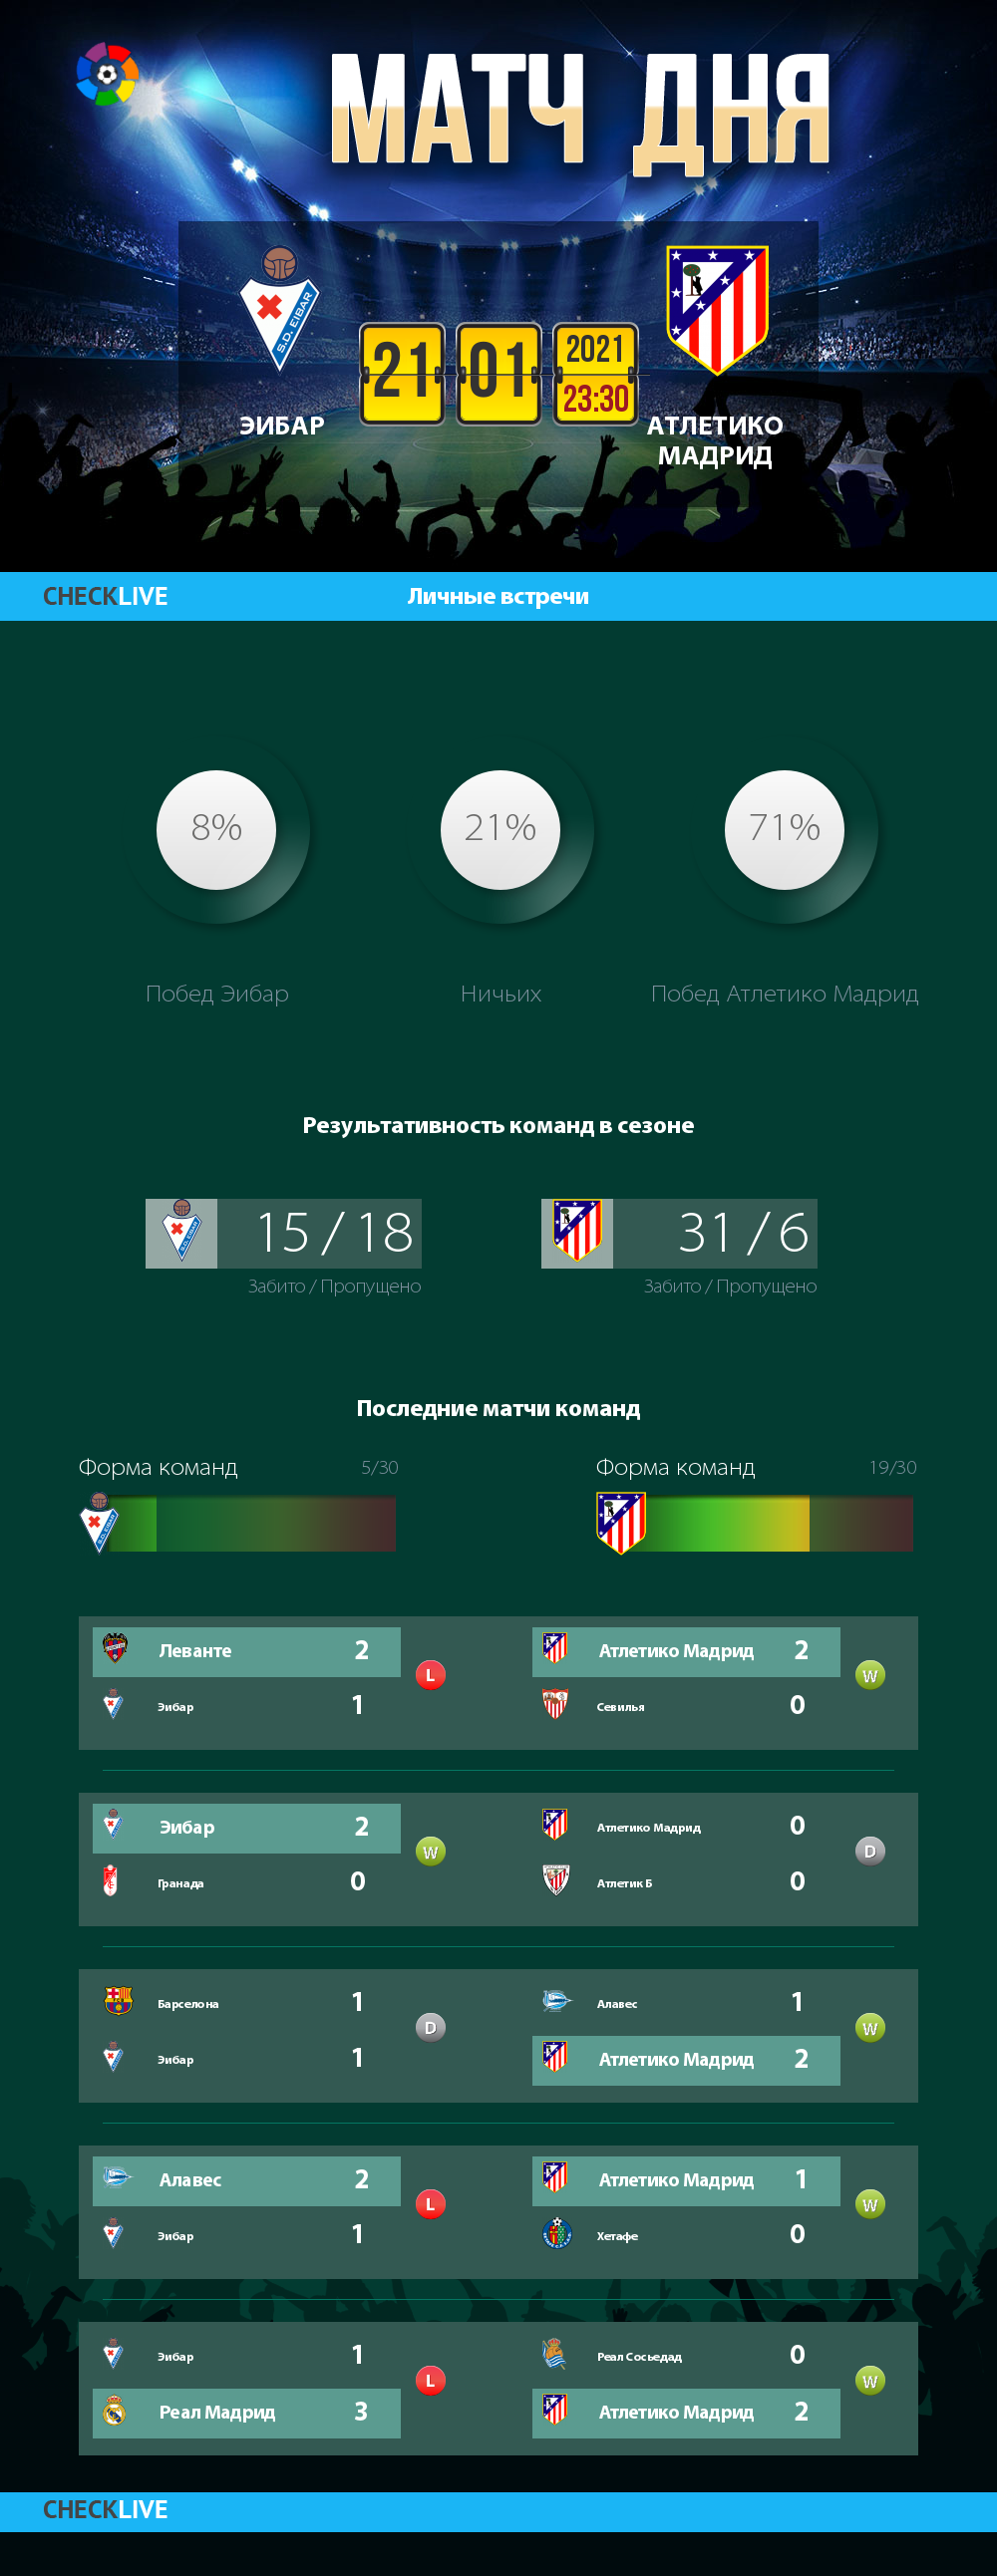 Инфографика Эибар и Атлетико Мадрид матч дня 21.01.2021